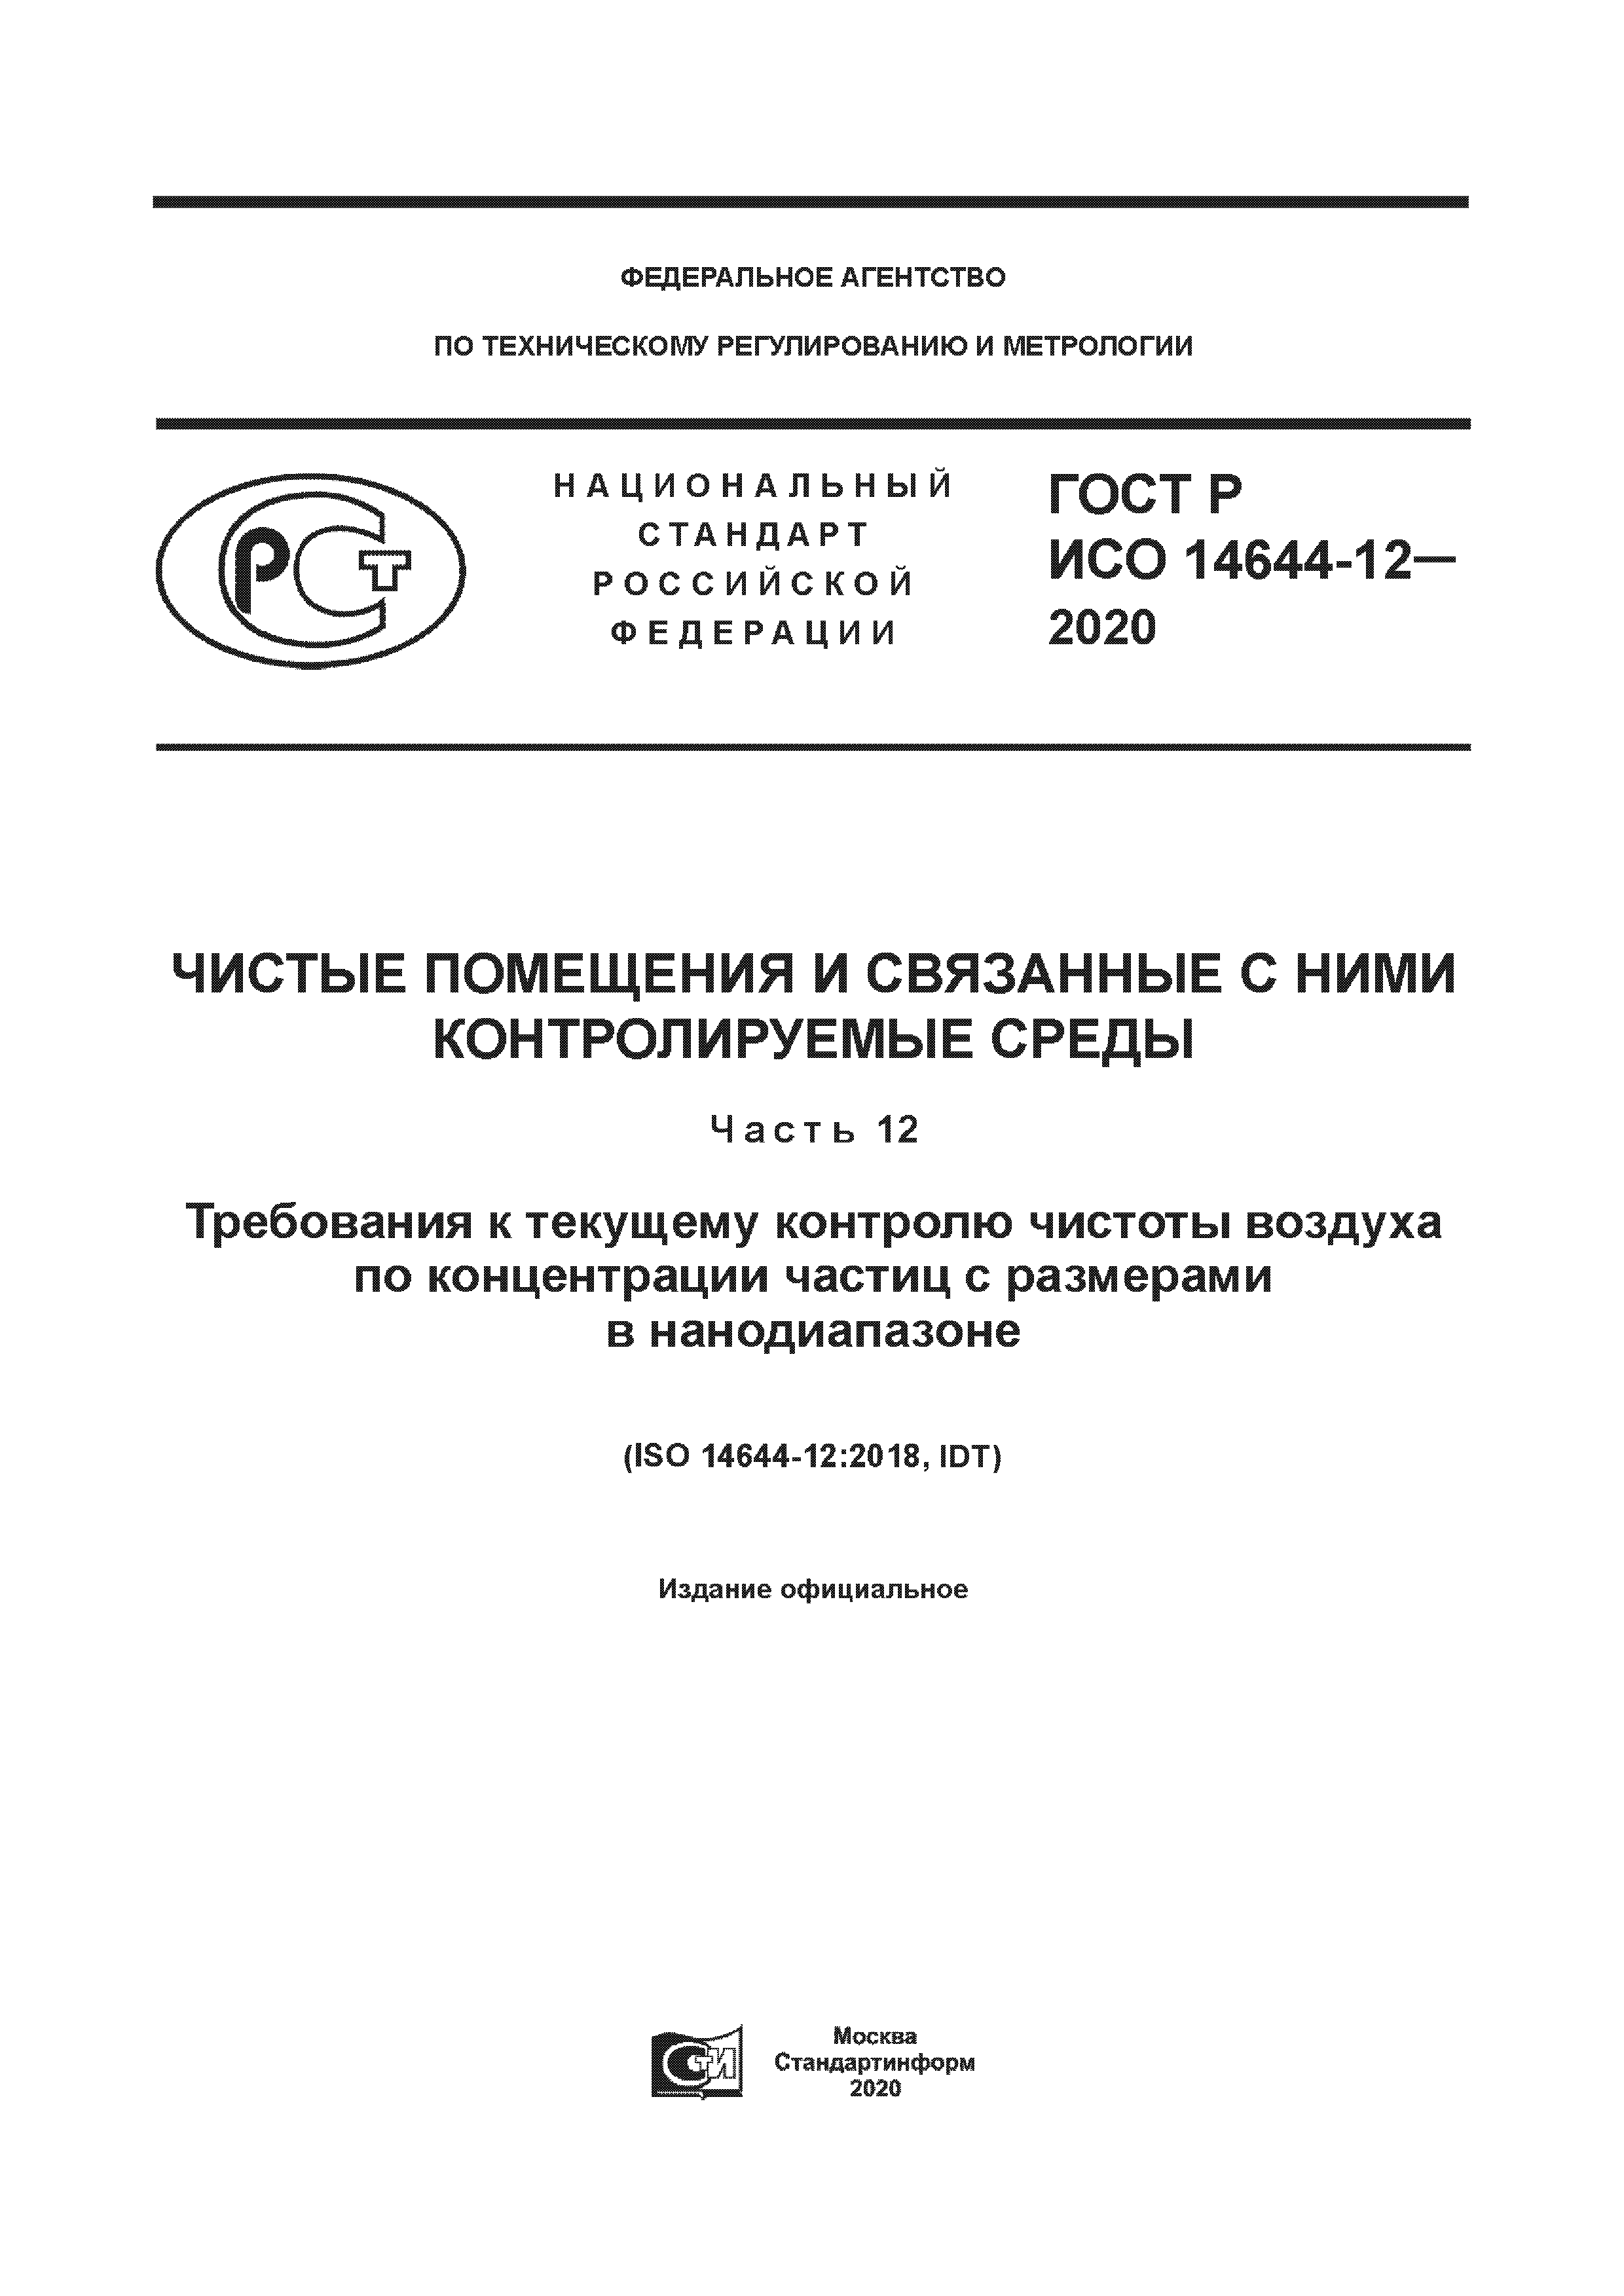 ГОСТ Р ИСО 14644-12-2020